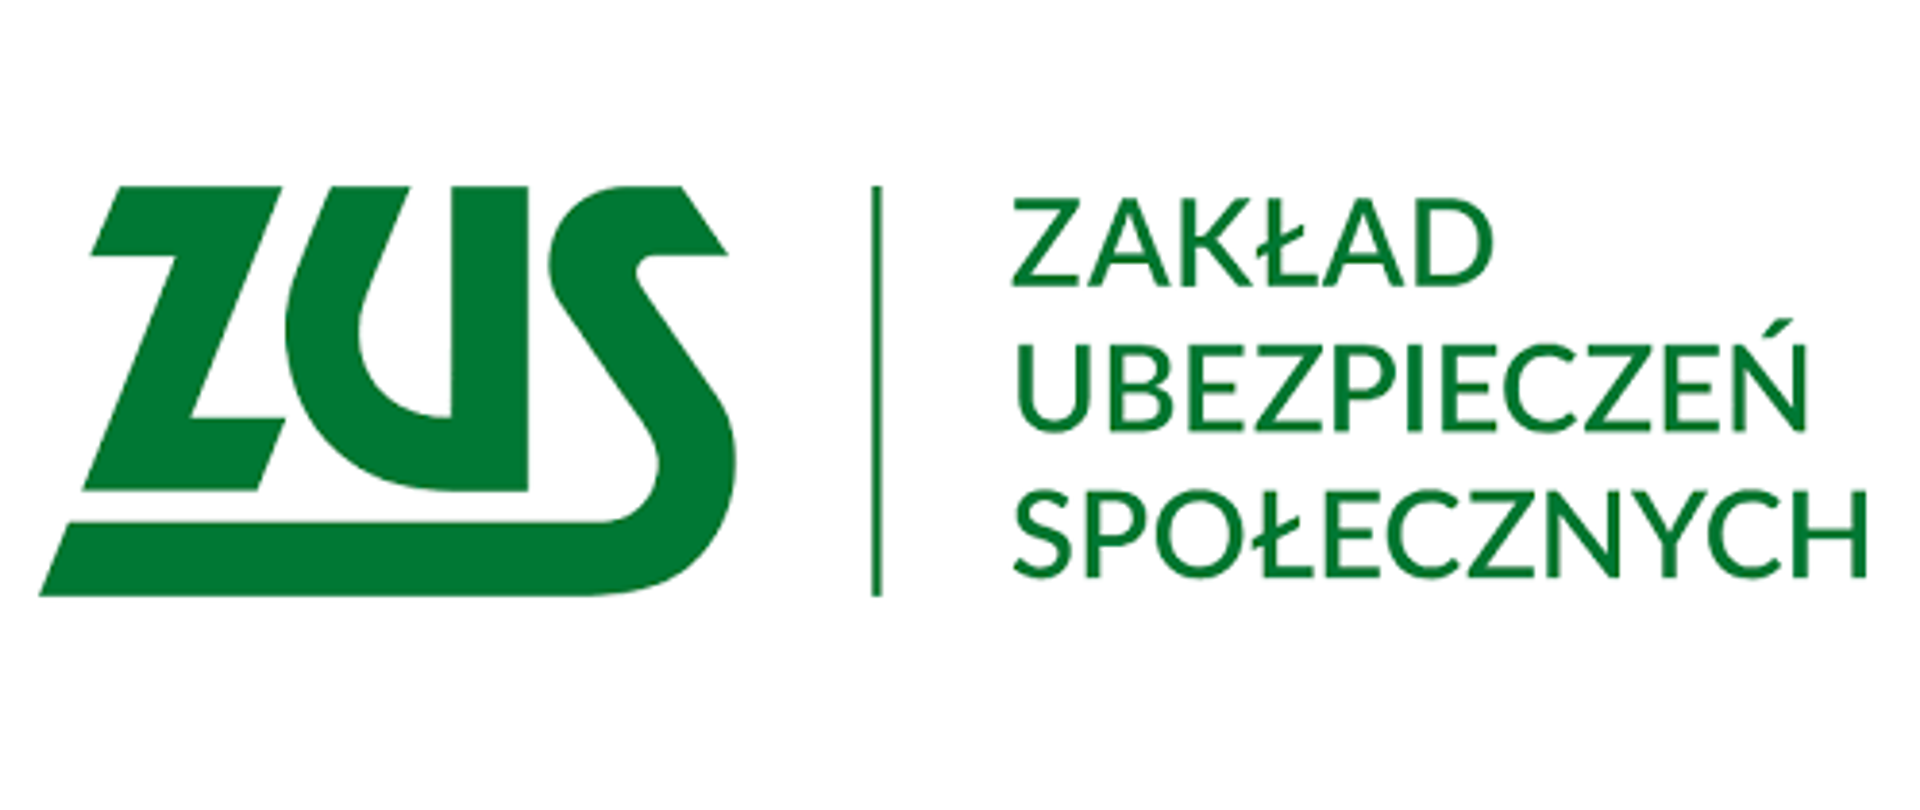 Logo Zakładu Ubezpieczeń Społecznych. Na białym tle zielony napis ZUS I Zakład Ubezpieczeń Społecznych